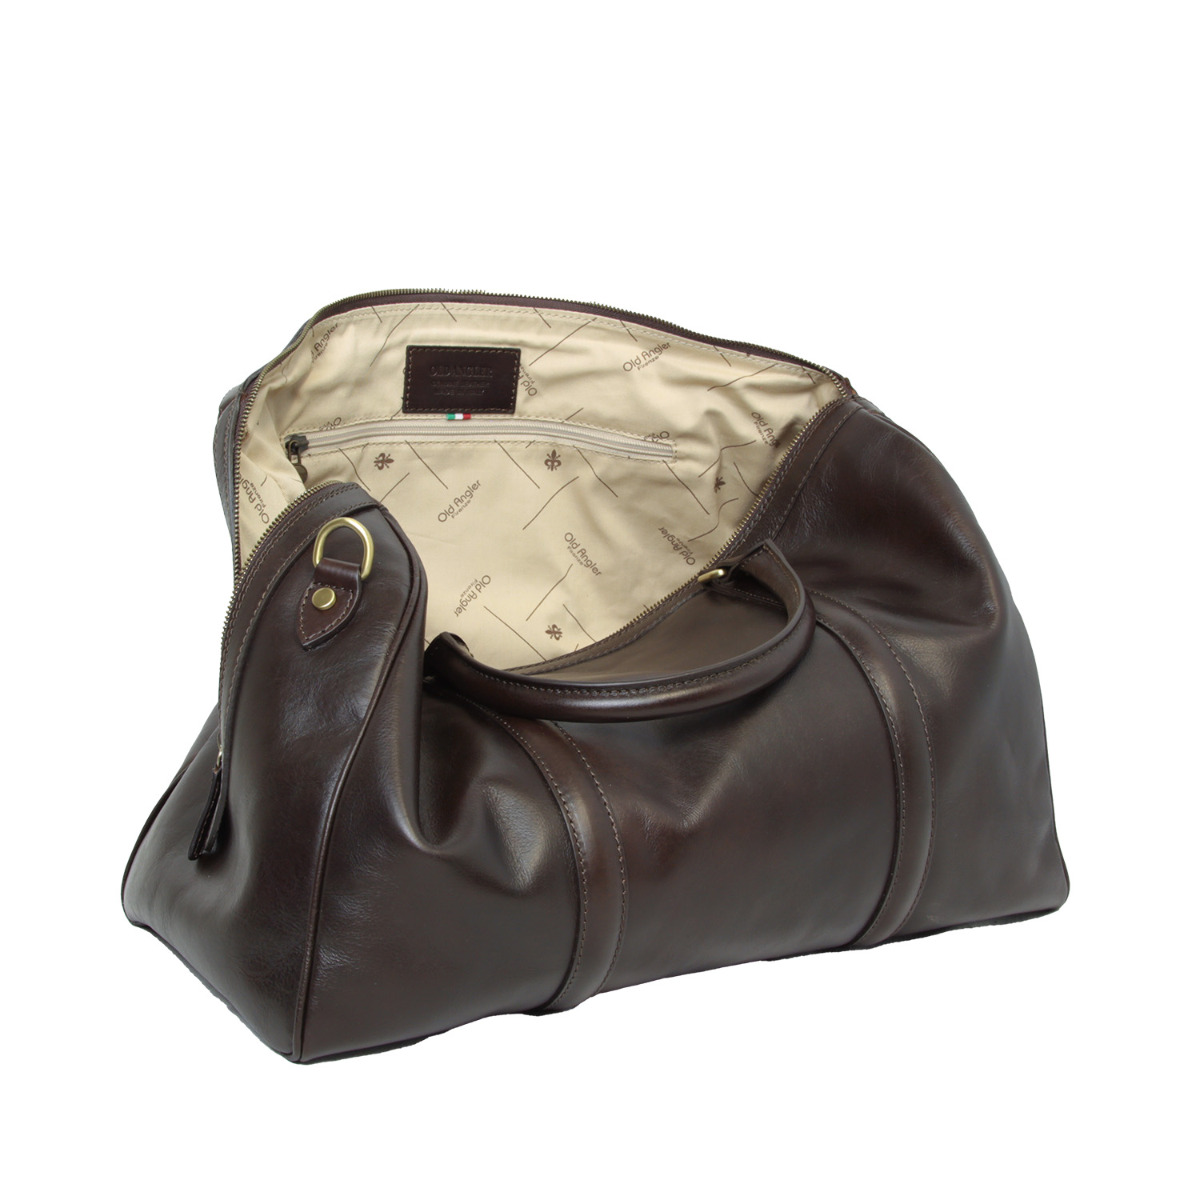 Full grain leather duffle bag - dark brown|412789TM|Old Angler Firenze